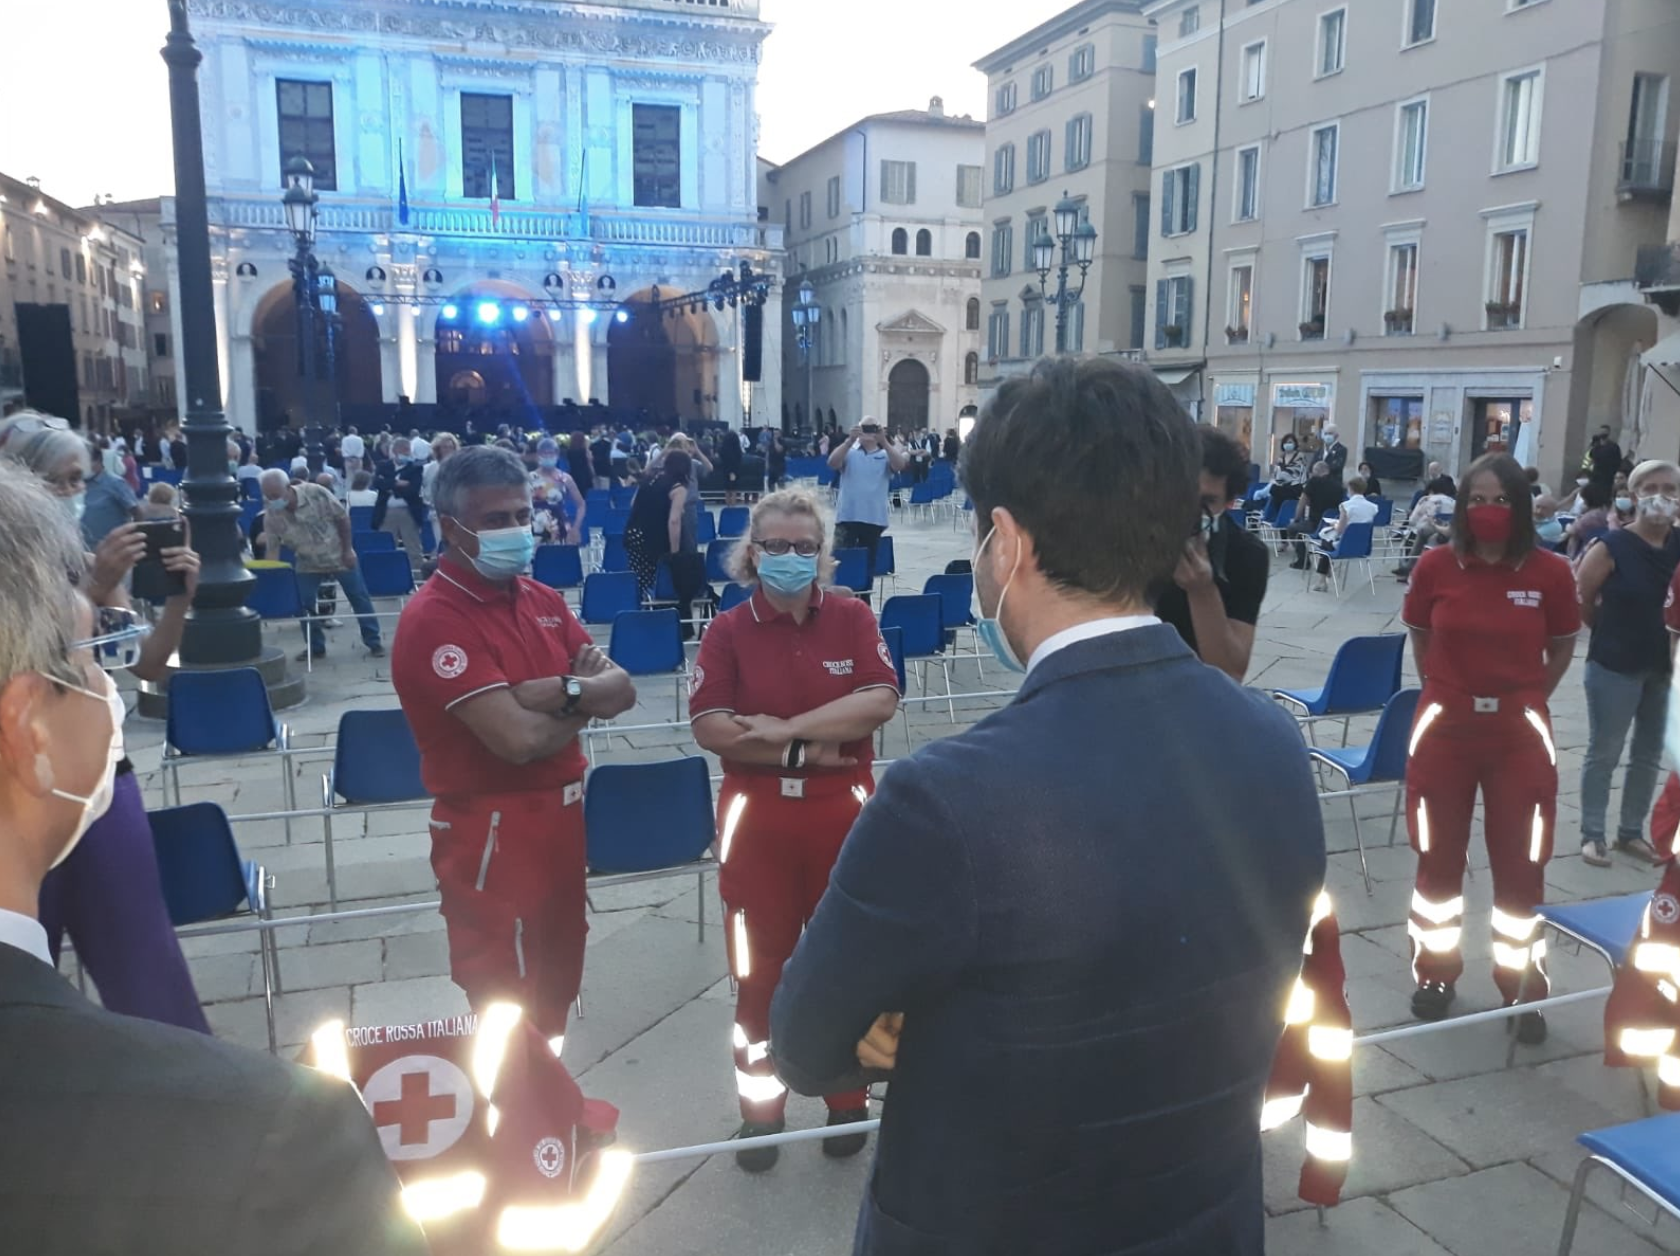 Le ministre de la Santé Roberto Speranza lors d'un déplacement dans la ville de Brescia fin juillet